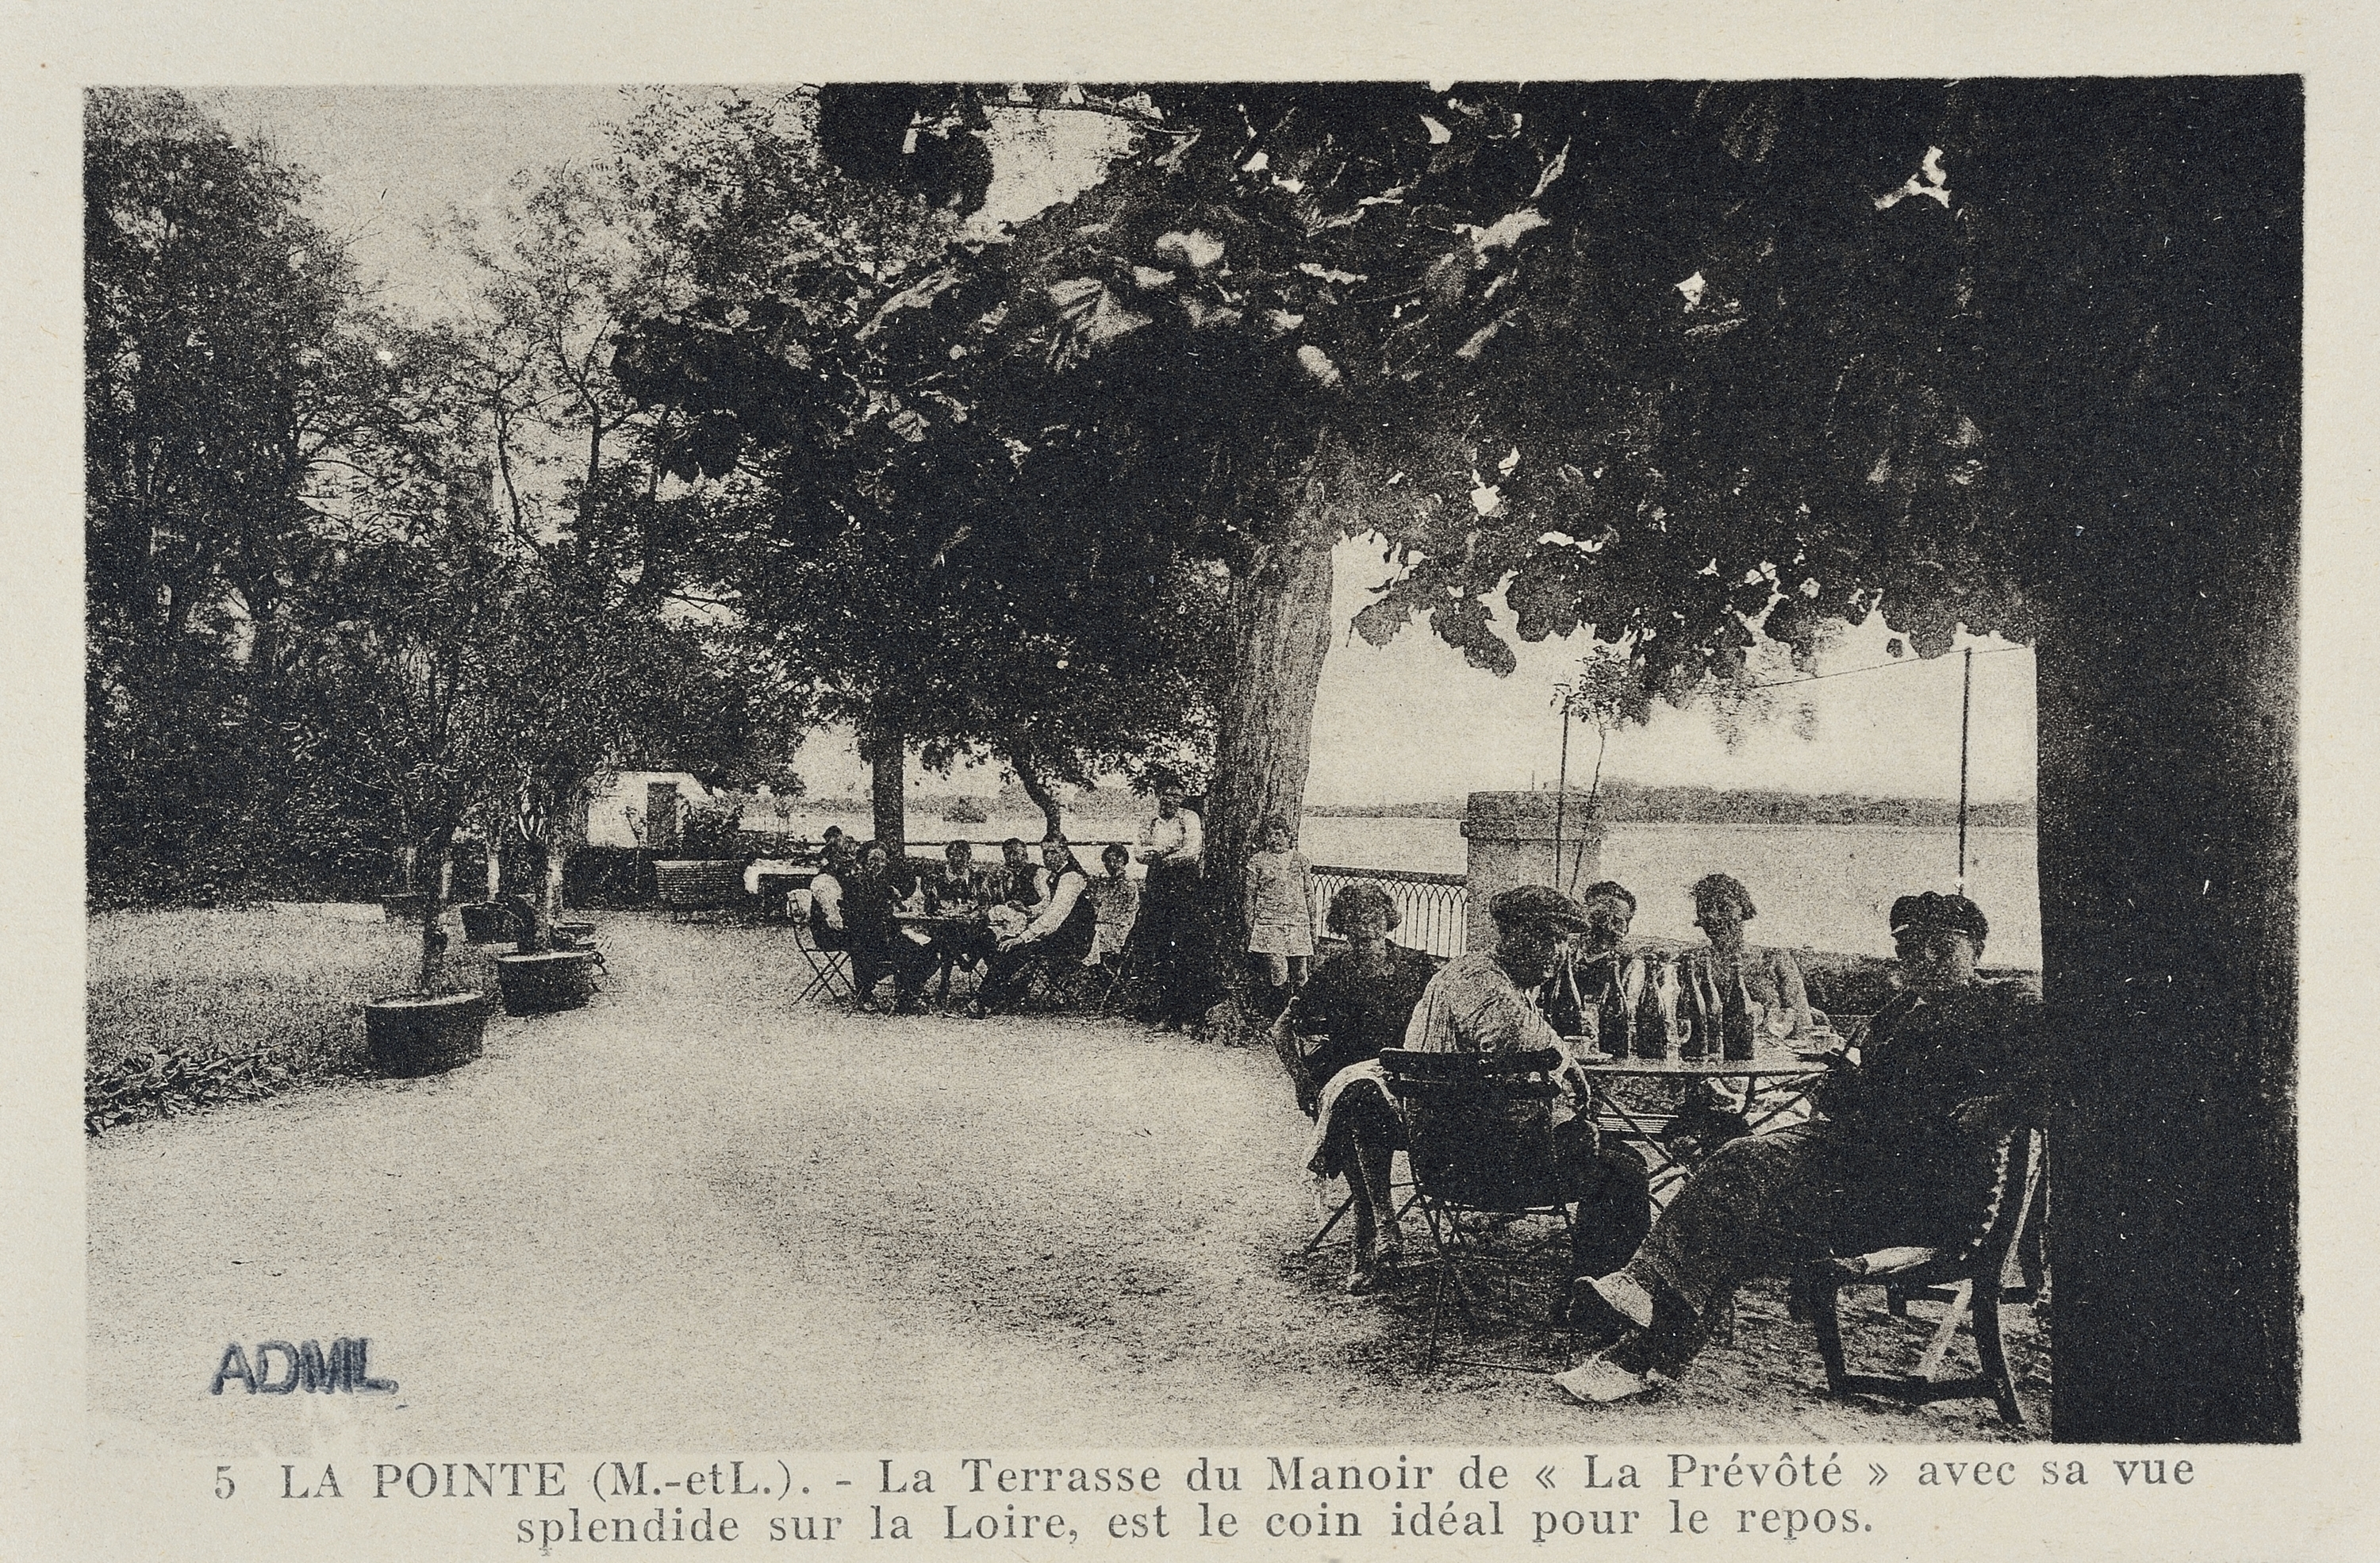 La terrasse de la Prévôté à la Pointe vers 1930.